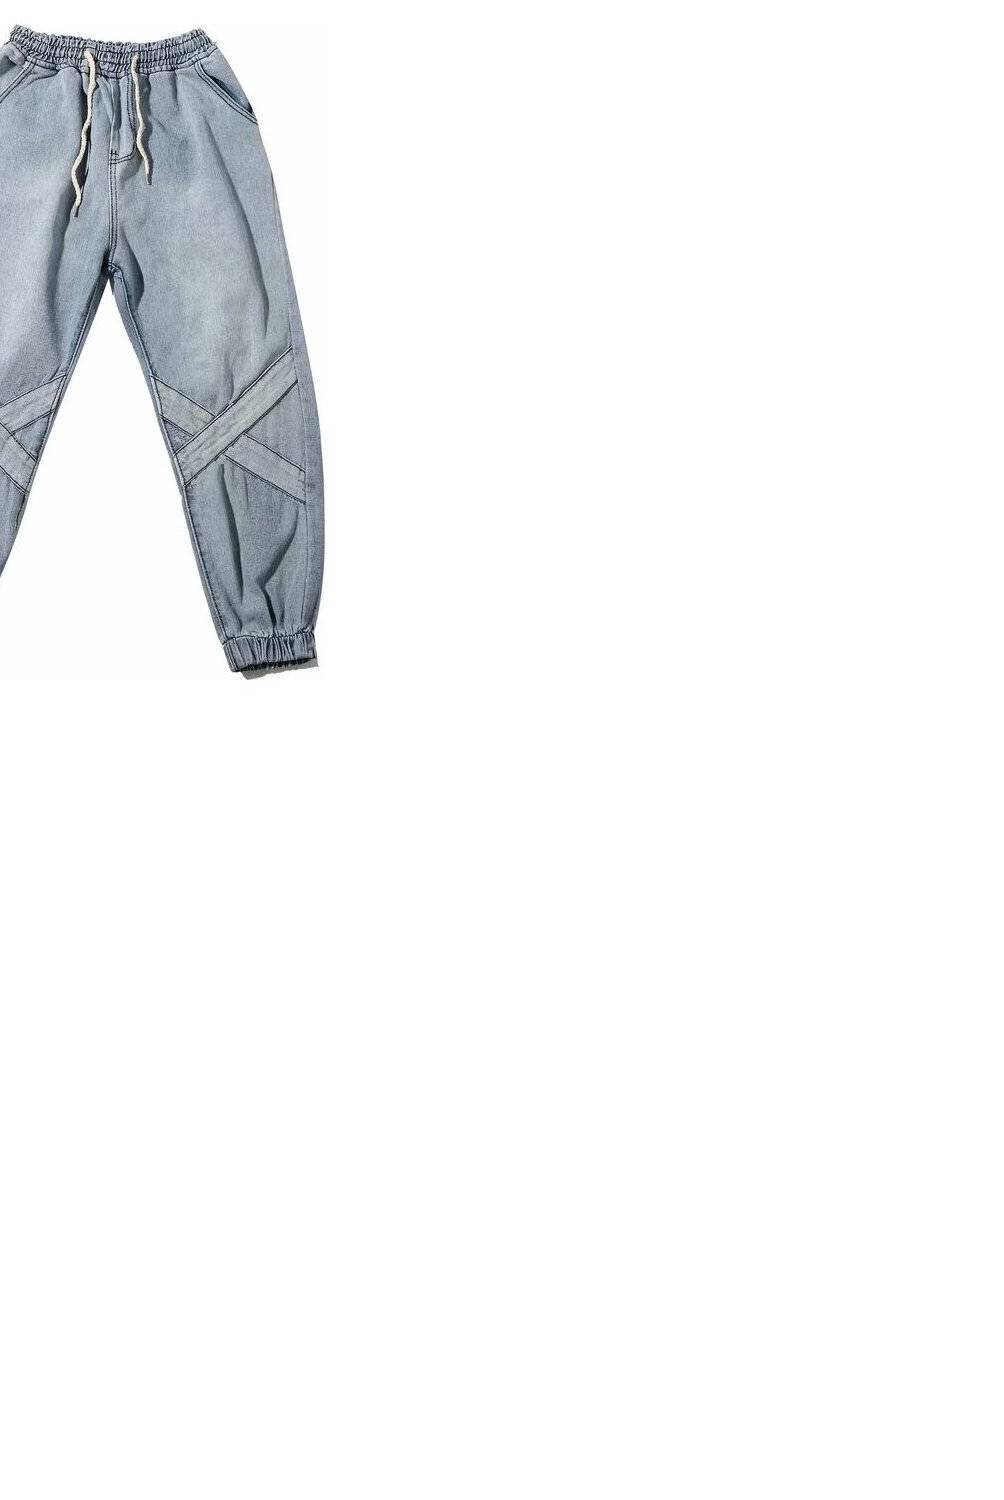 Generico - Men Cashmere Fleece Velvet Jeans Male Casual Trous